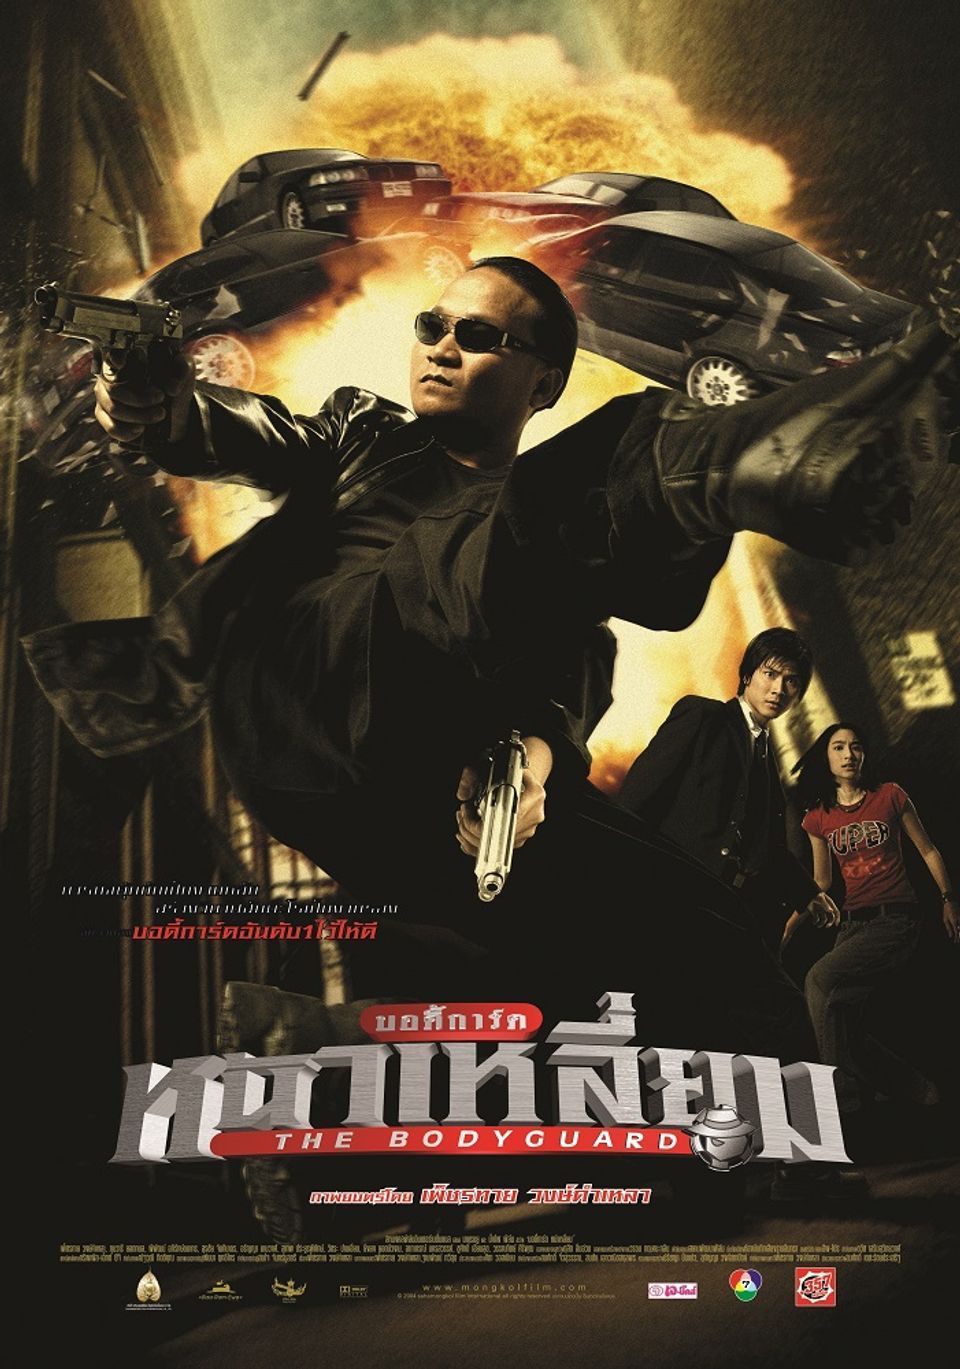 ดูหนังออนไลน์ฟรี ดูหนังฟรี The Bodyguard 1 พากย์ไทย